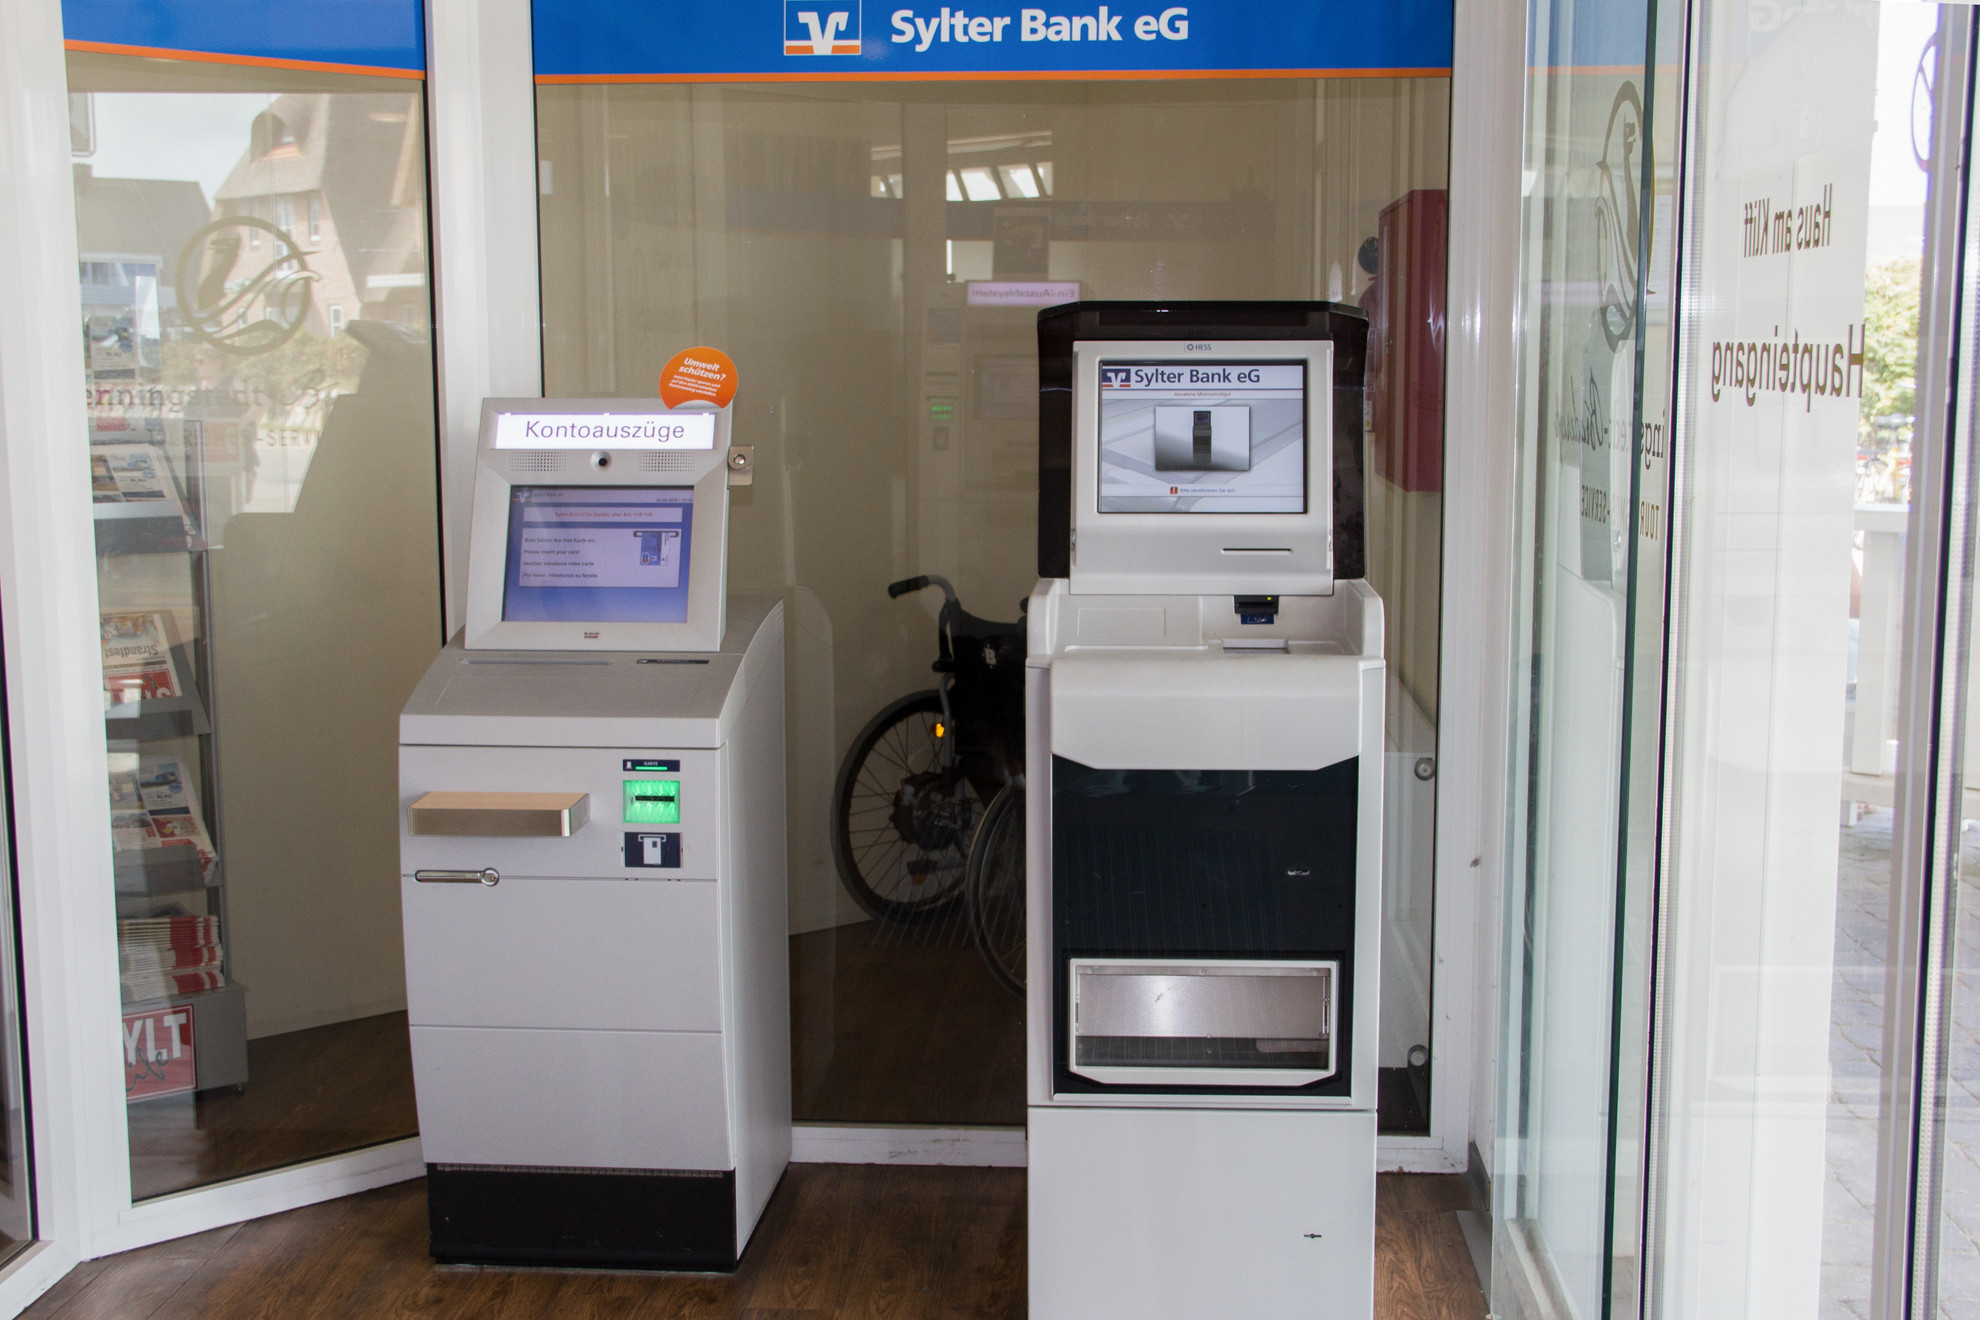 SB-Filiale der Sylter Bank